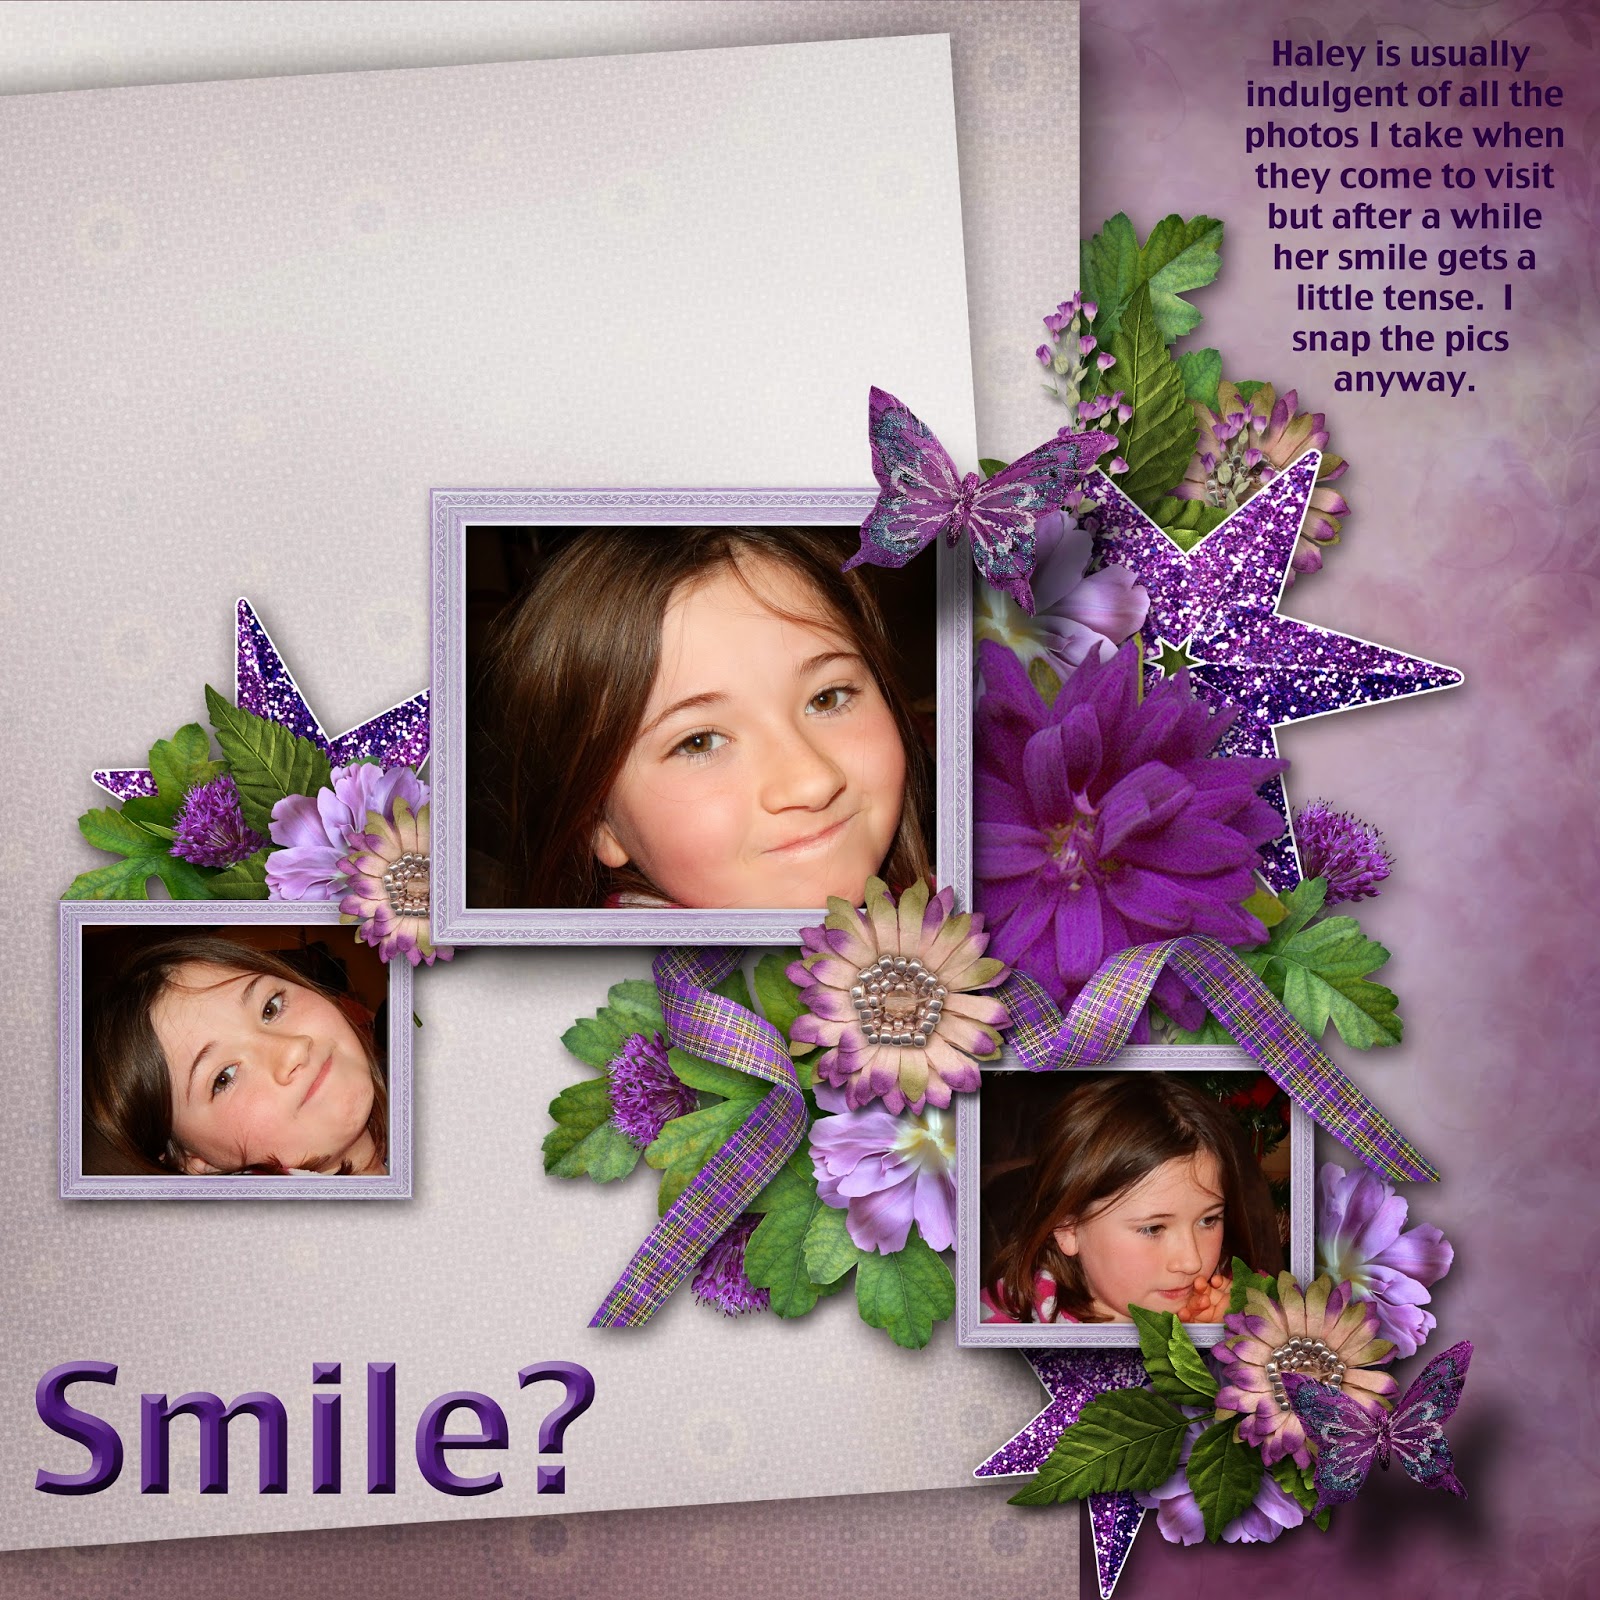 http://4.bp.blogspot.com/-pfMEbIqCqws/U0dDGcAsoFI/AAAAAAAAAaE/kRPXBaA3Zog/s1600/What+Kind+of+Smile+is+That.jpg